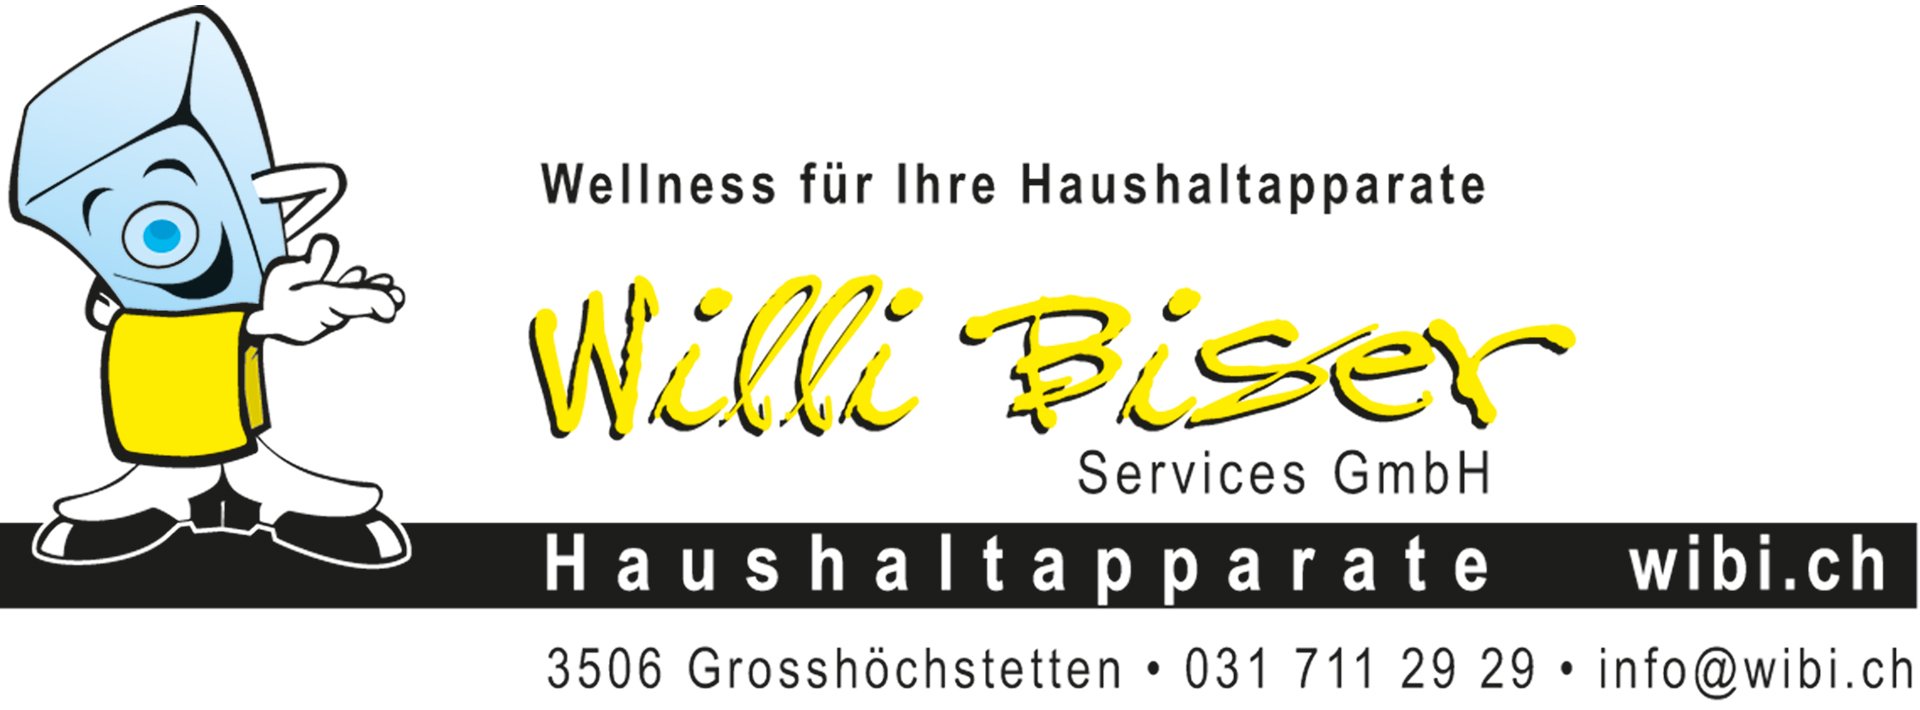 Bronzesponsor - Willi Biser Services GmbH